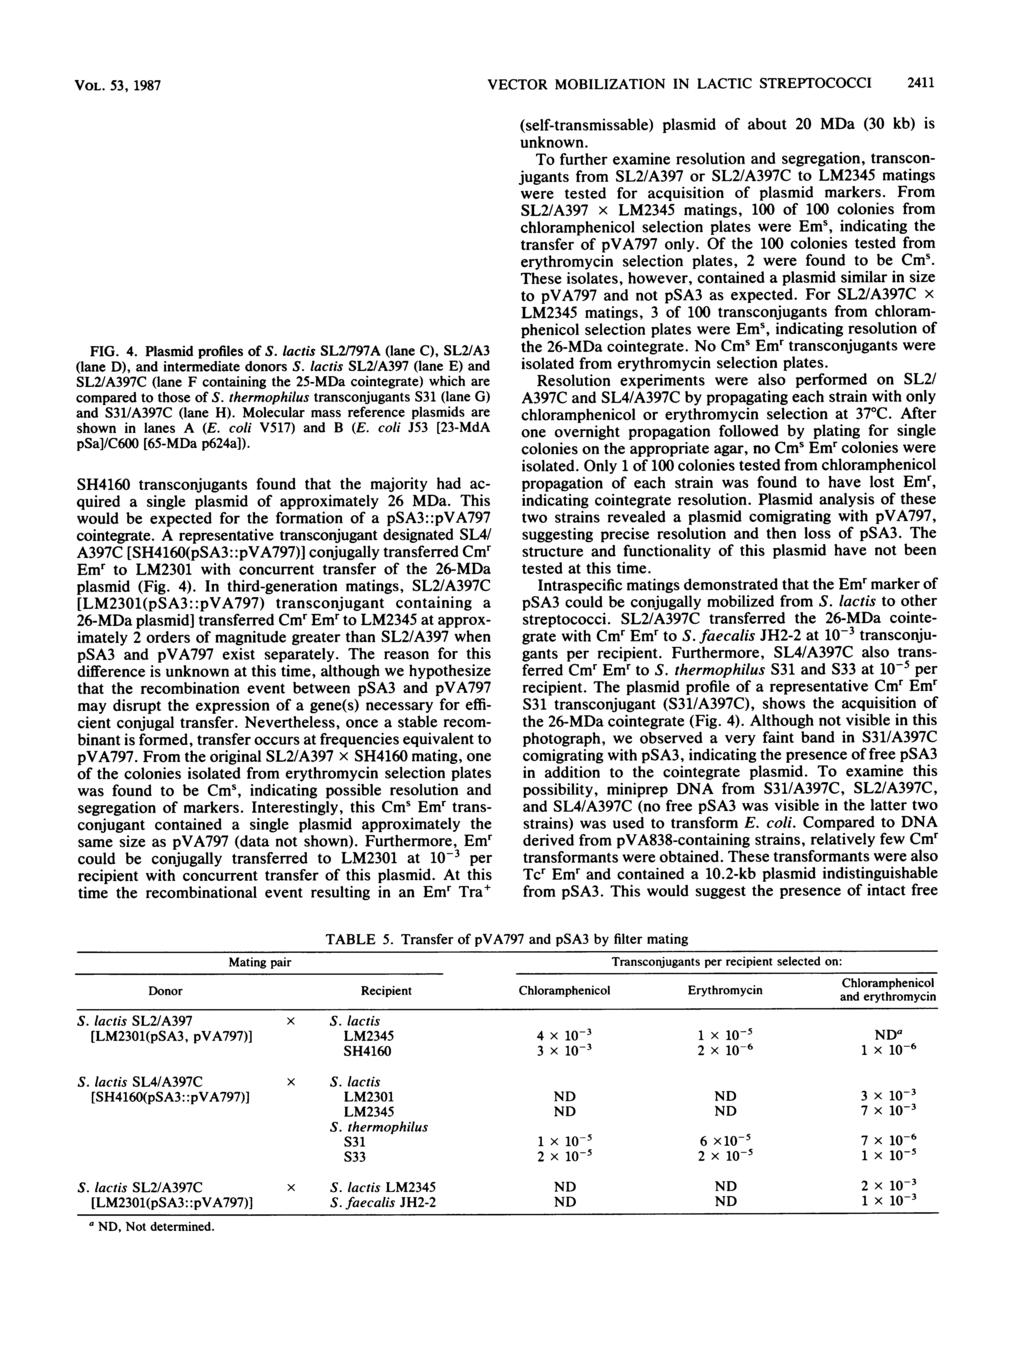 VOL. 53, 1987 VECTOR MOBILIZATION IN LACTIC STREPTOCOCCI 2411 Pf5kr A B C D E F G- H pva797 01 GINTEGRATE psa3 FIG. 4. Plasmid profiles of S.